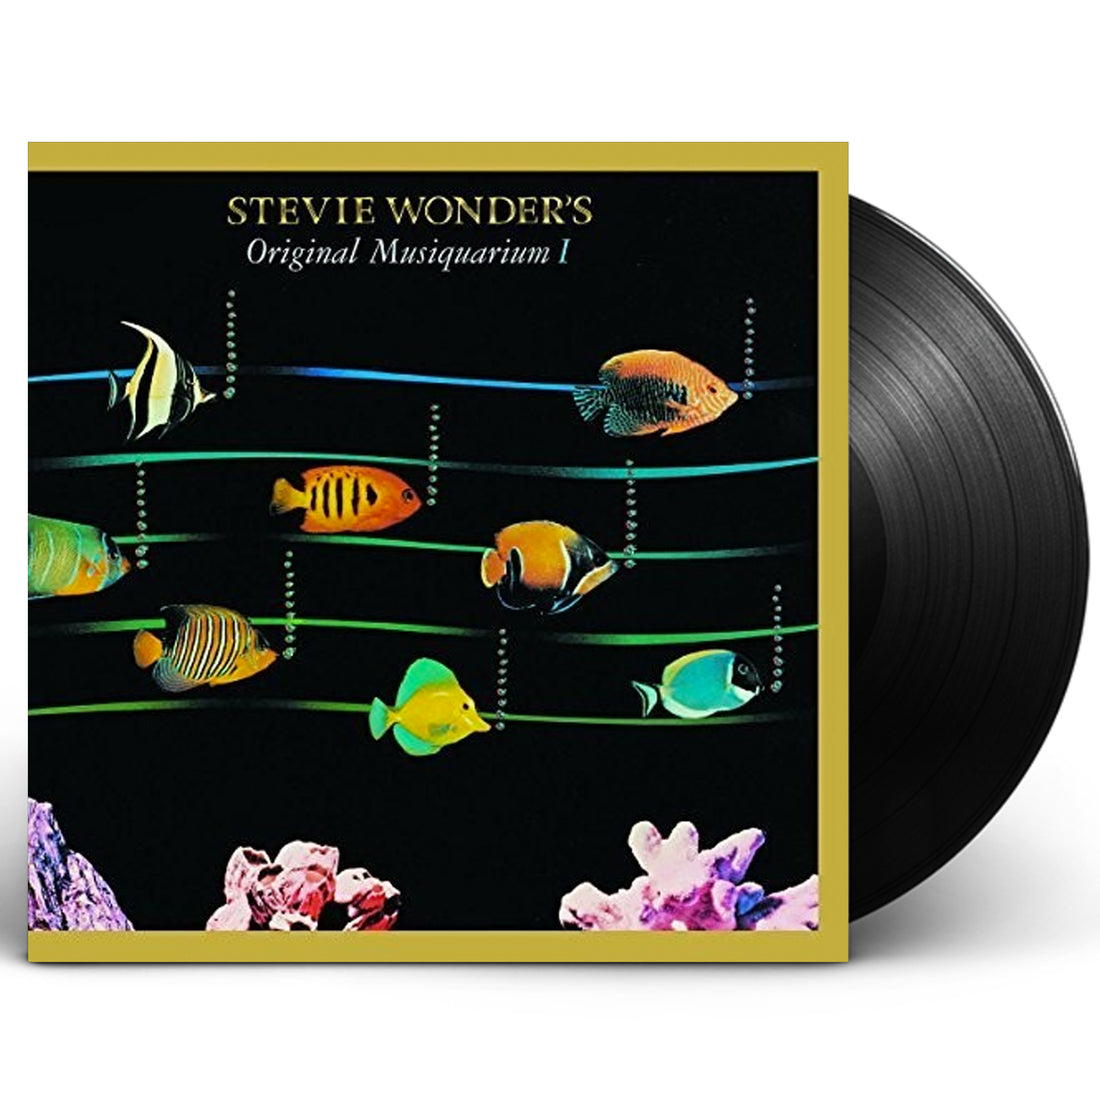 Stevie Wonder "Original Musiquarium I" 2xLP Vinyl